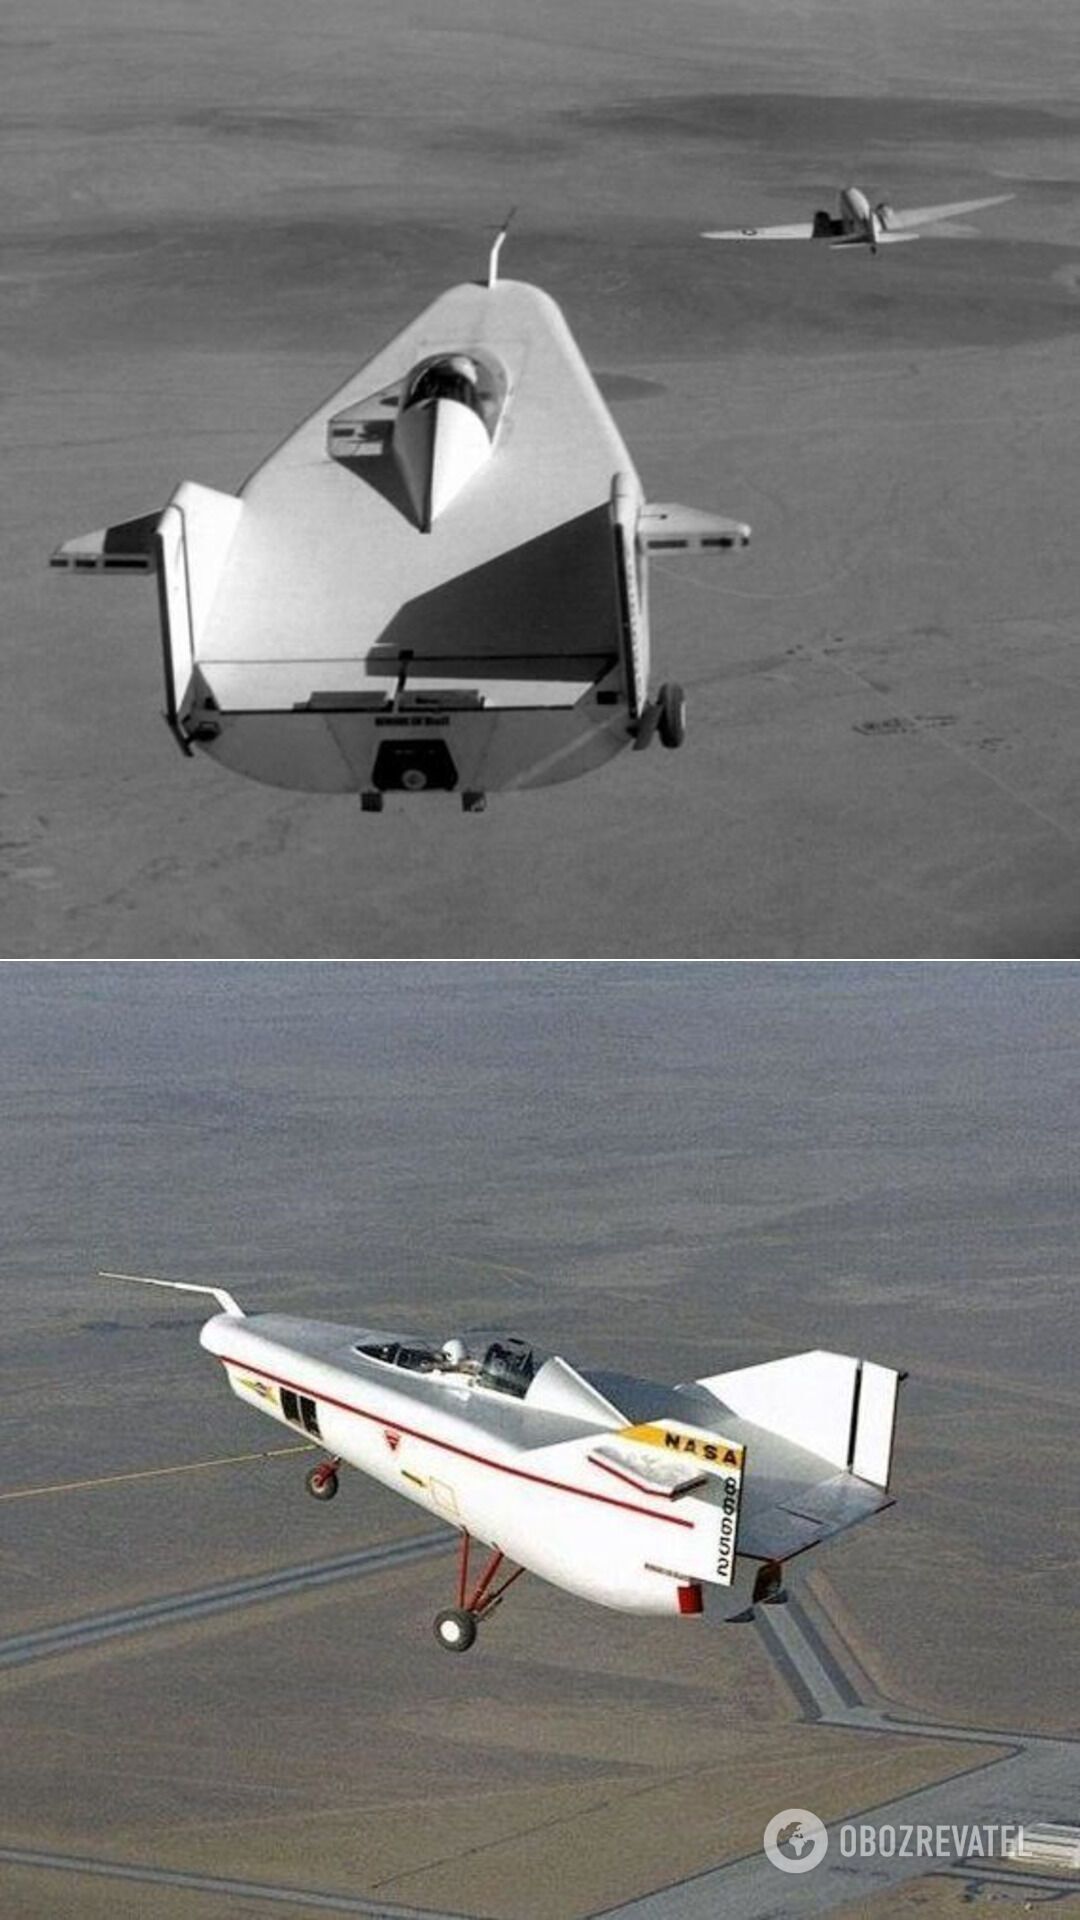 Проєкт NASA М2-F1, який можна назвати просто планером дивної конструкції, адже в нього не було не тільки крил, але і двигуна. Був призначений як капсула для приземлення астронавтів і отримав прізвисько "літальна ванна". Перший політ M2-F1 відбувся 16 серпня 1963 року народження, а рівно через три роки того ж дня – і останній